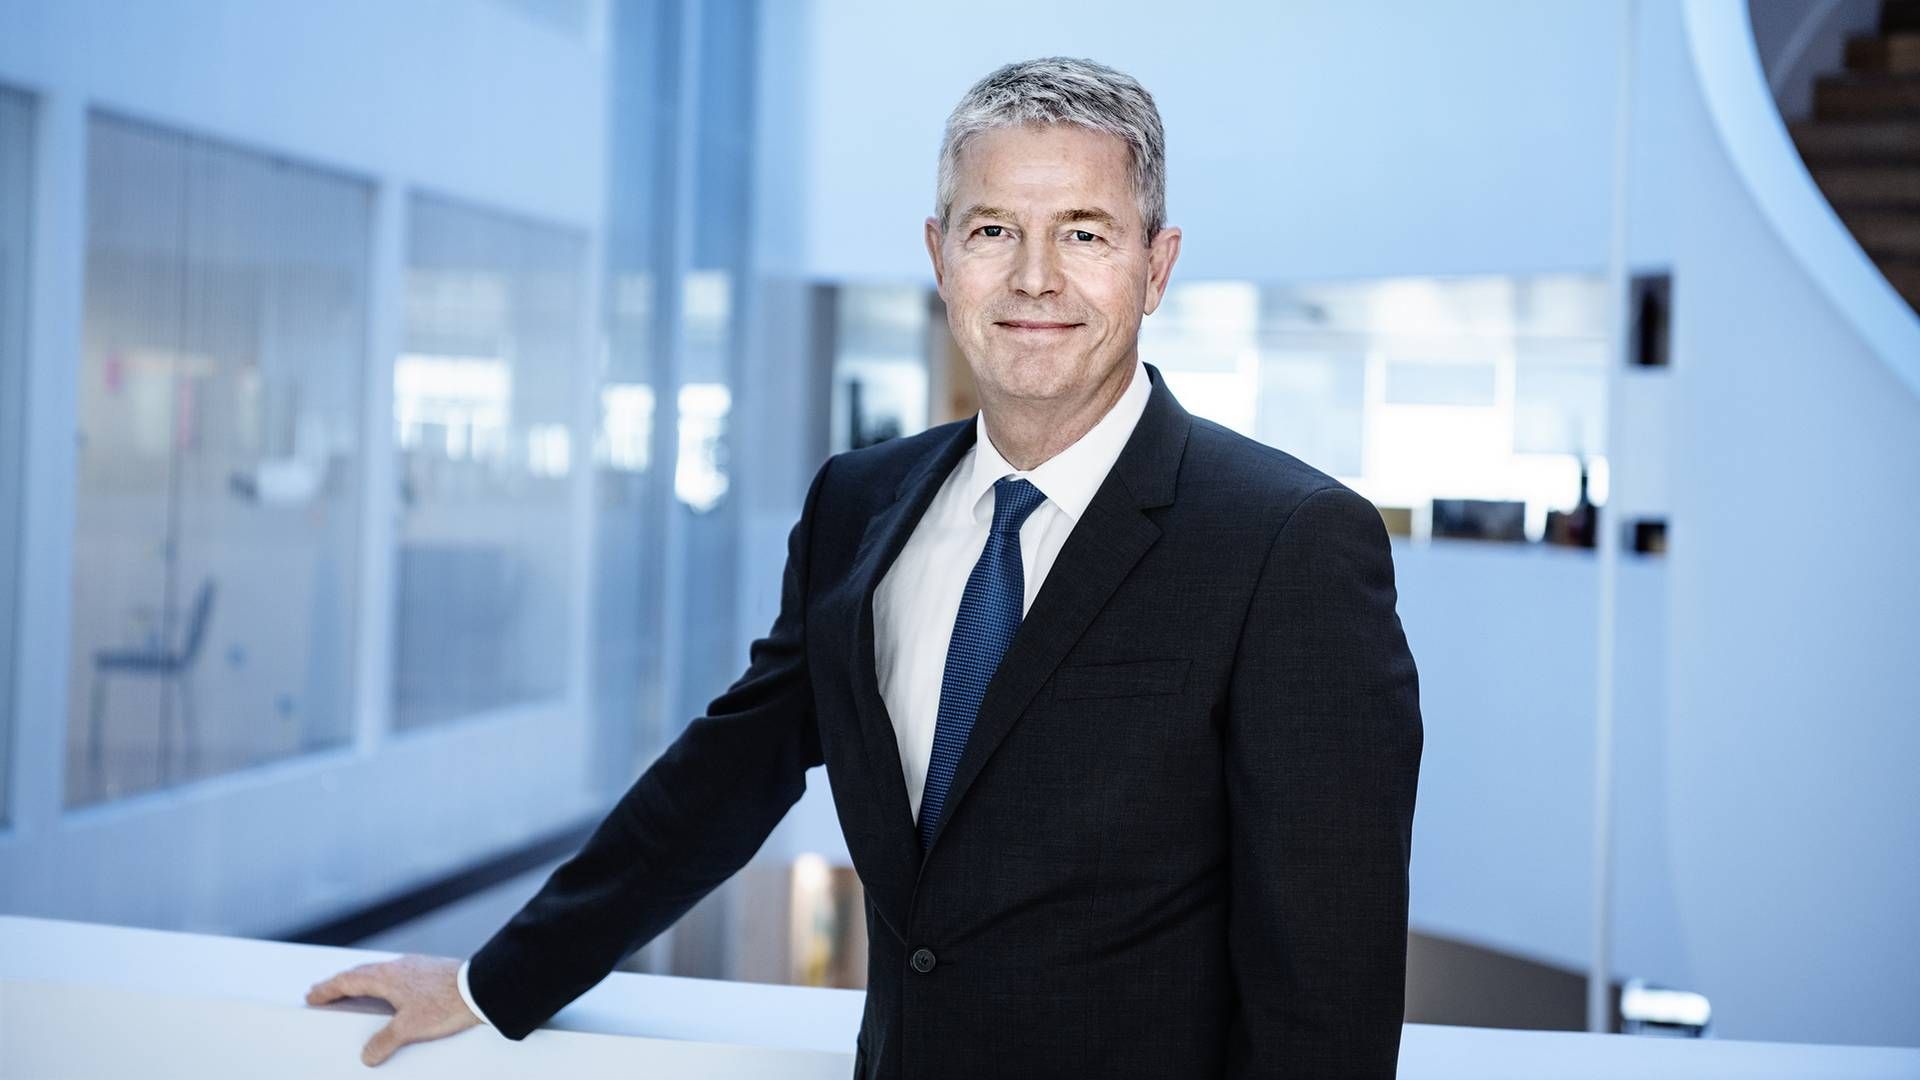 Adm. direktør i Sampension Hasse Jørgensen kan glæde sig over et godt investeringsår i 2021. | Foto: PR/Sampension